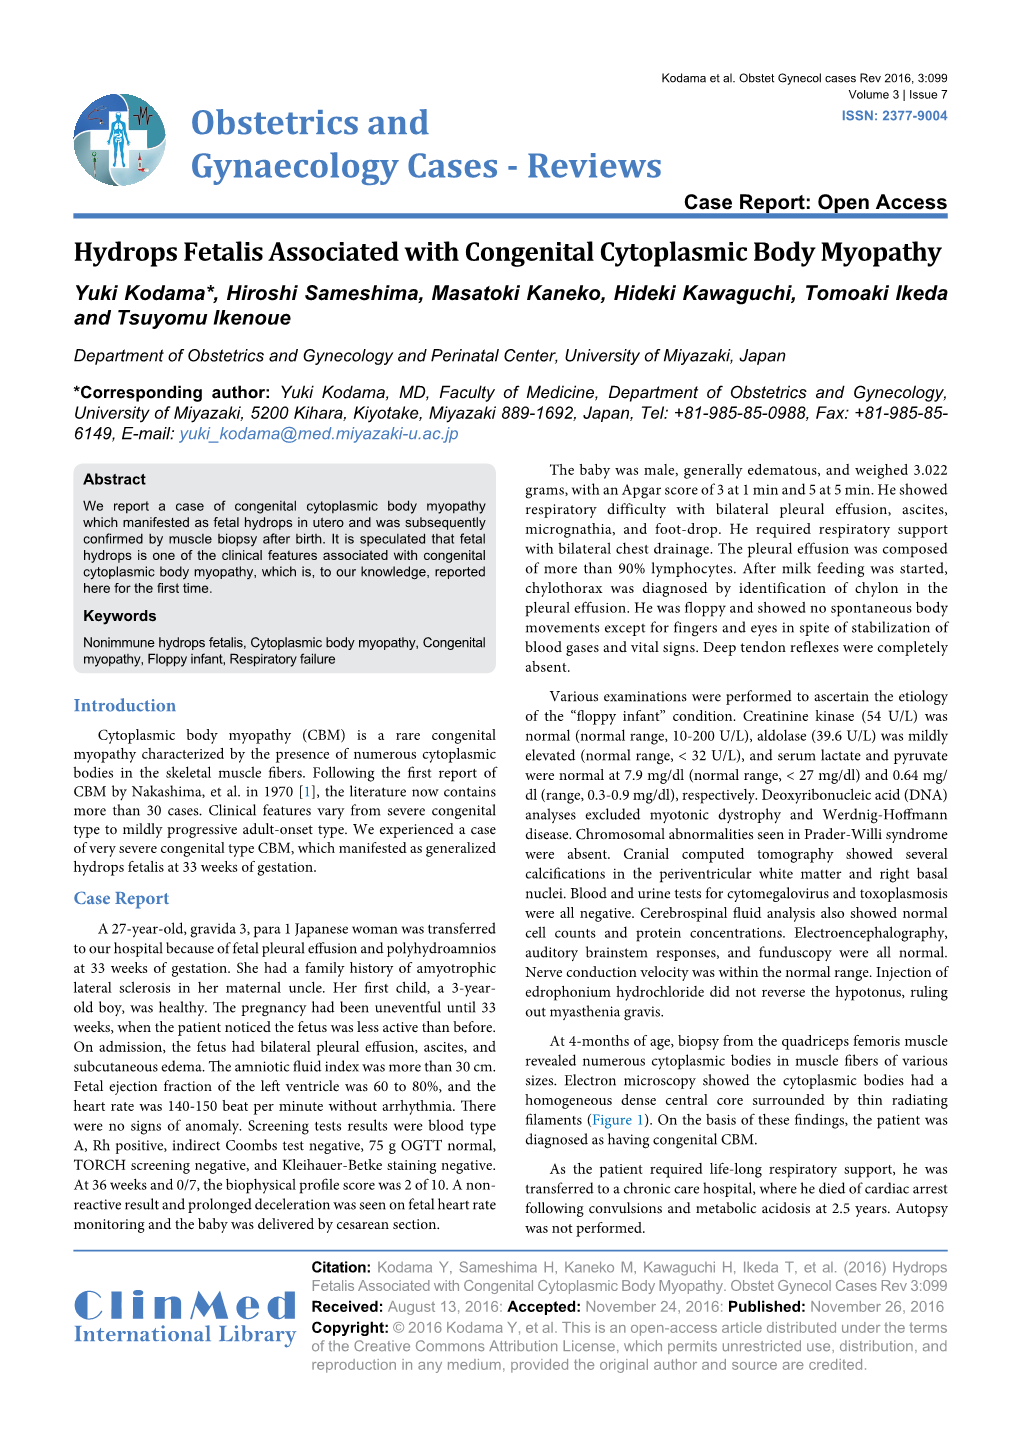 Hydrops Fetalis Associated with Congenital Cytoplasmic Body